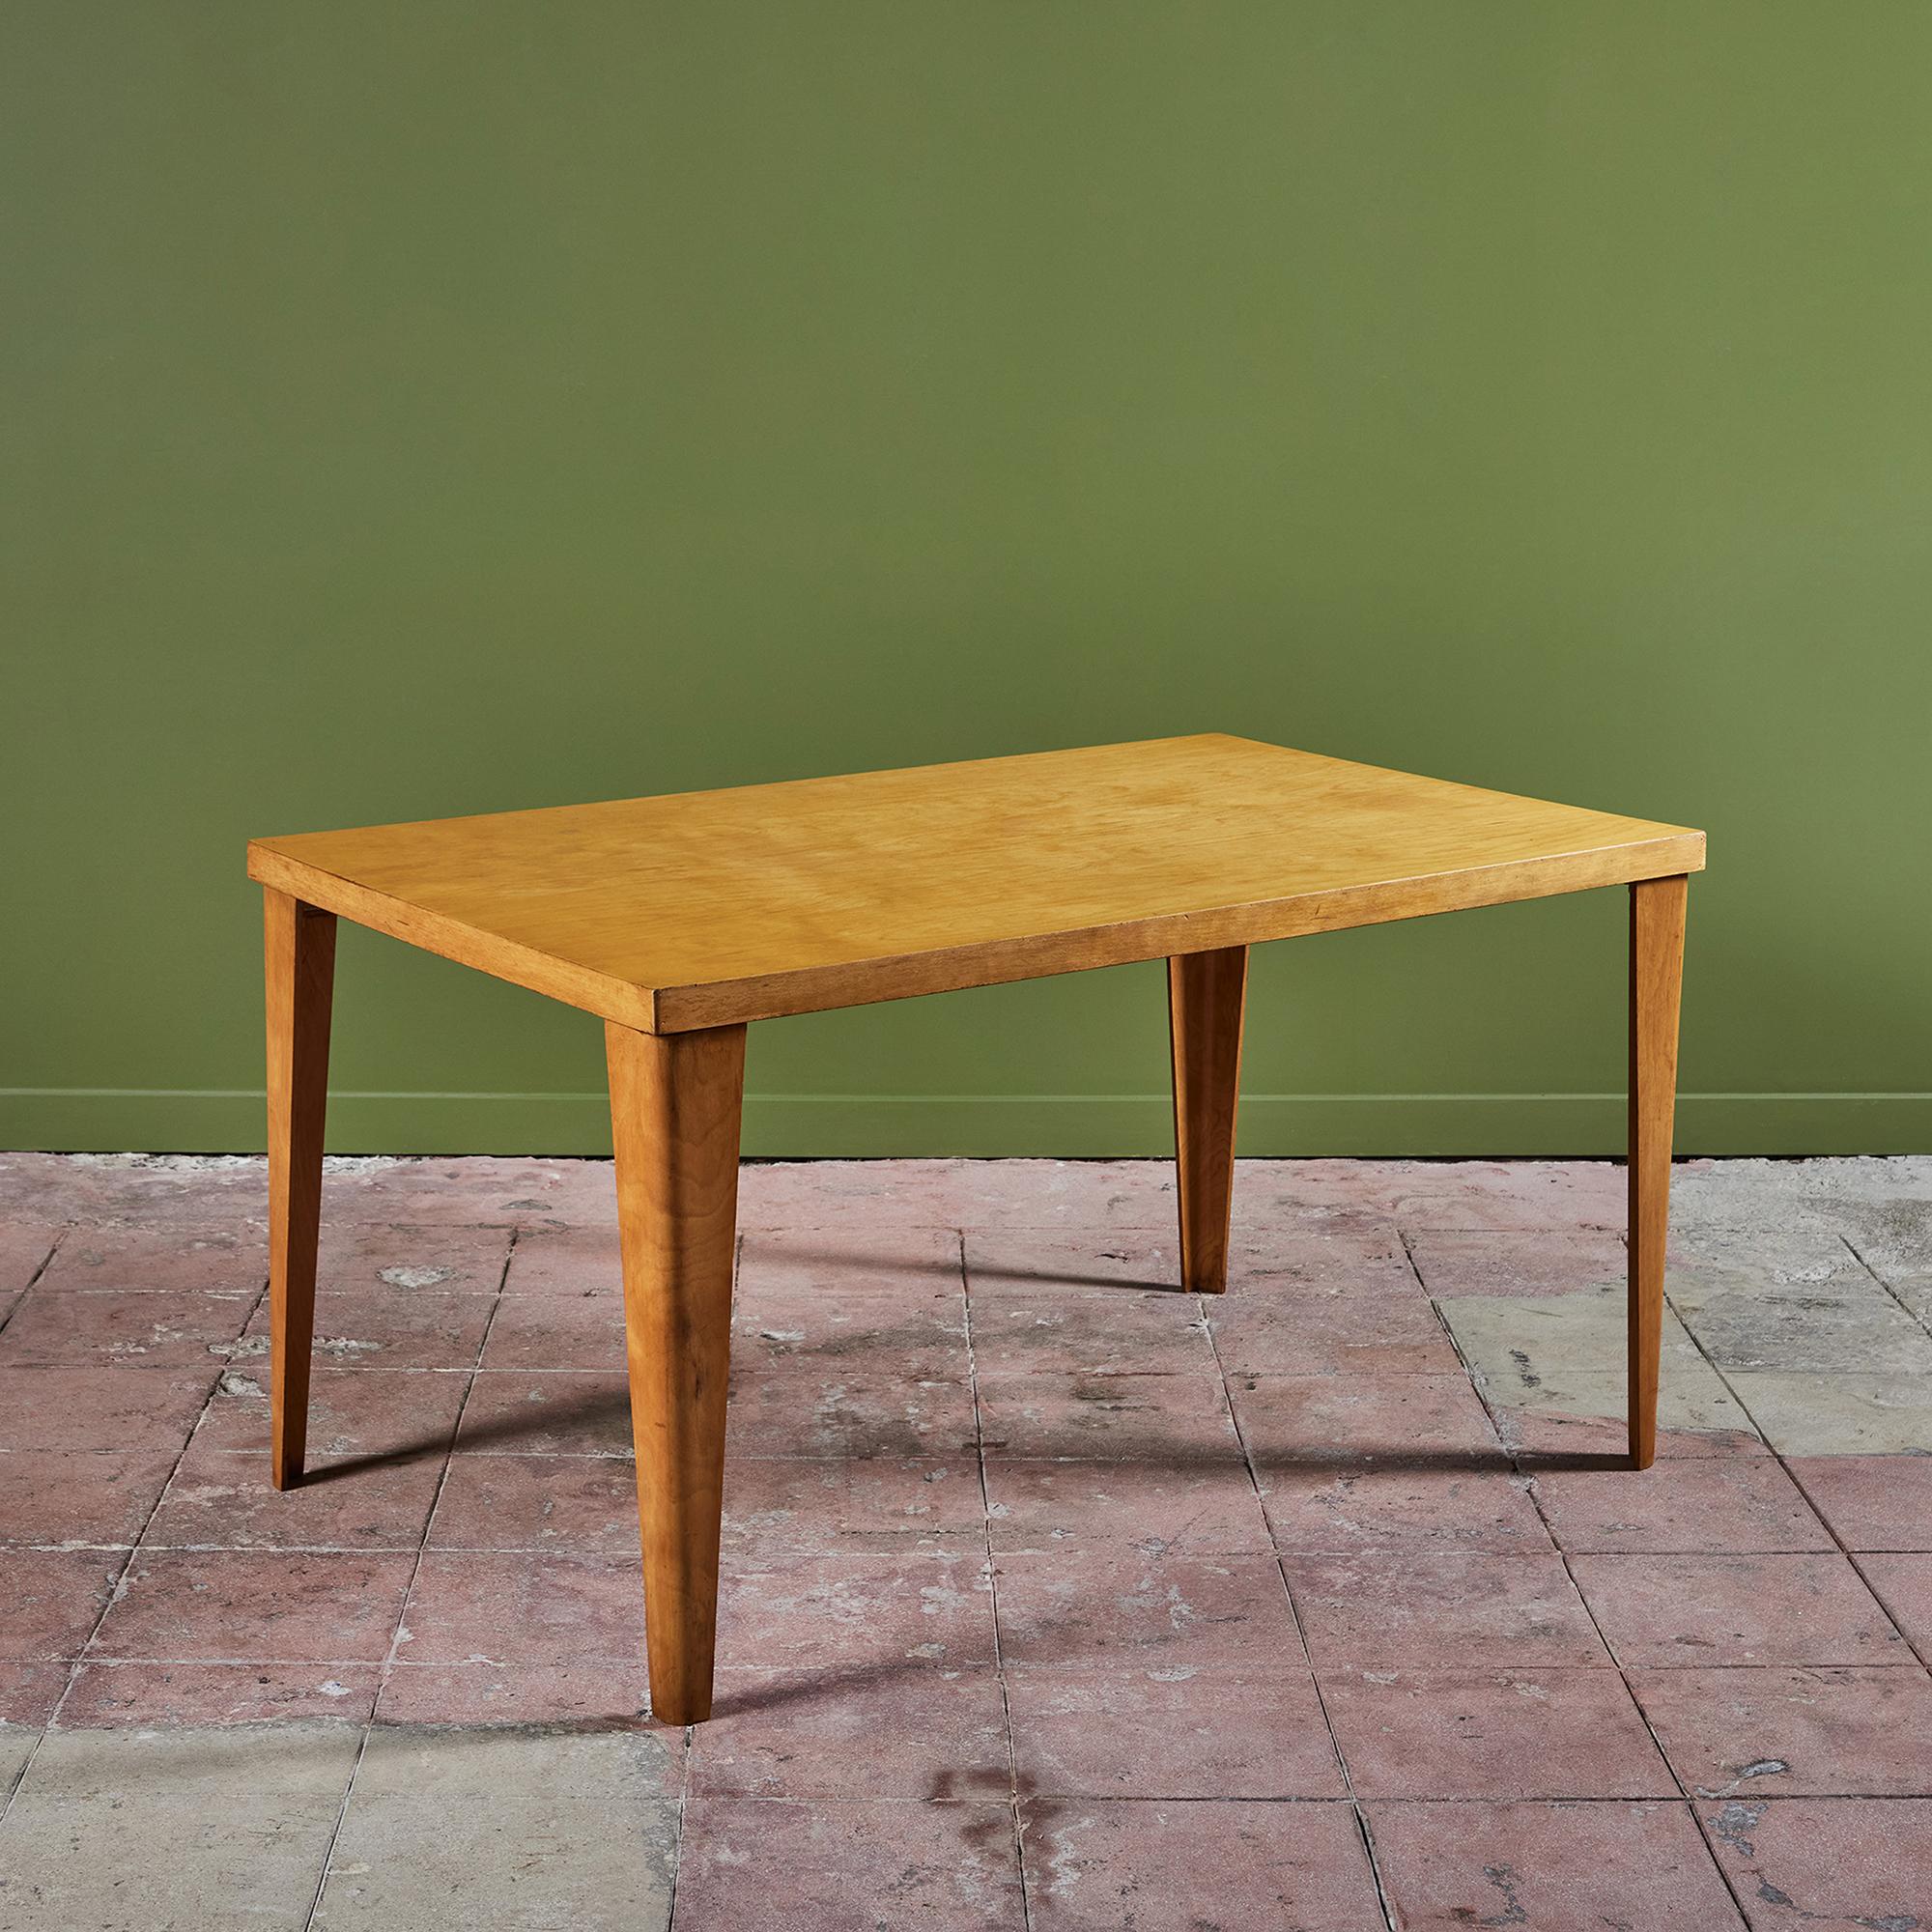 Rare table de salle à manger rectangulaire en contreplaqué plié d'érable, conçue par Ray et Charles Eames et produite par Evans Plywood Division pour Herman Miller. Baptisé DTW-1 (